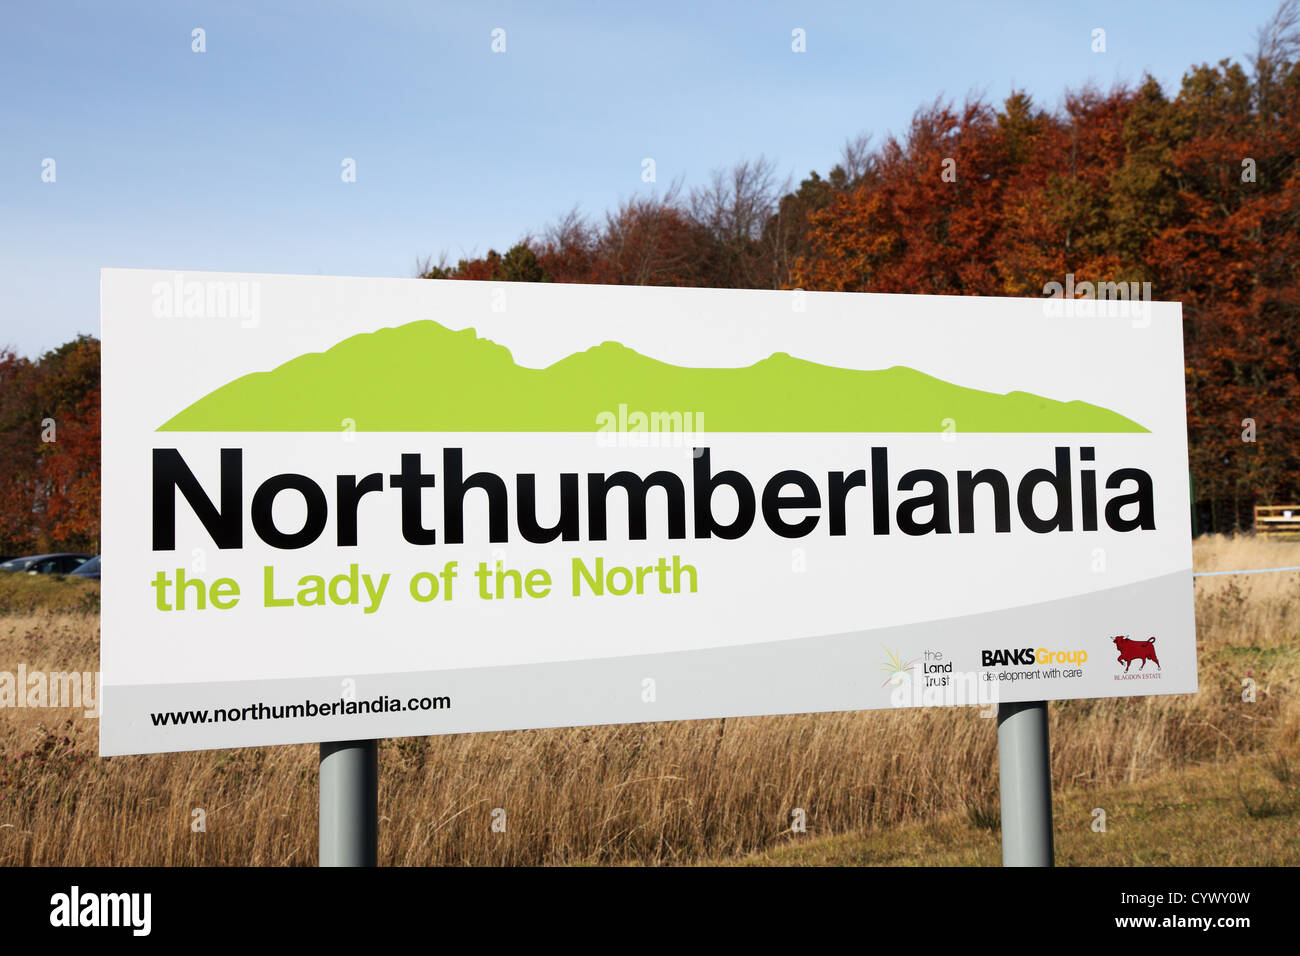 Firmar Northumberlandia Dama del norte en la entrada a la escultura de landform humana dama reclinado del noreste de Inglaterra Foto de stock